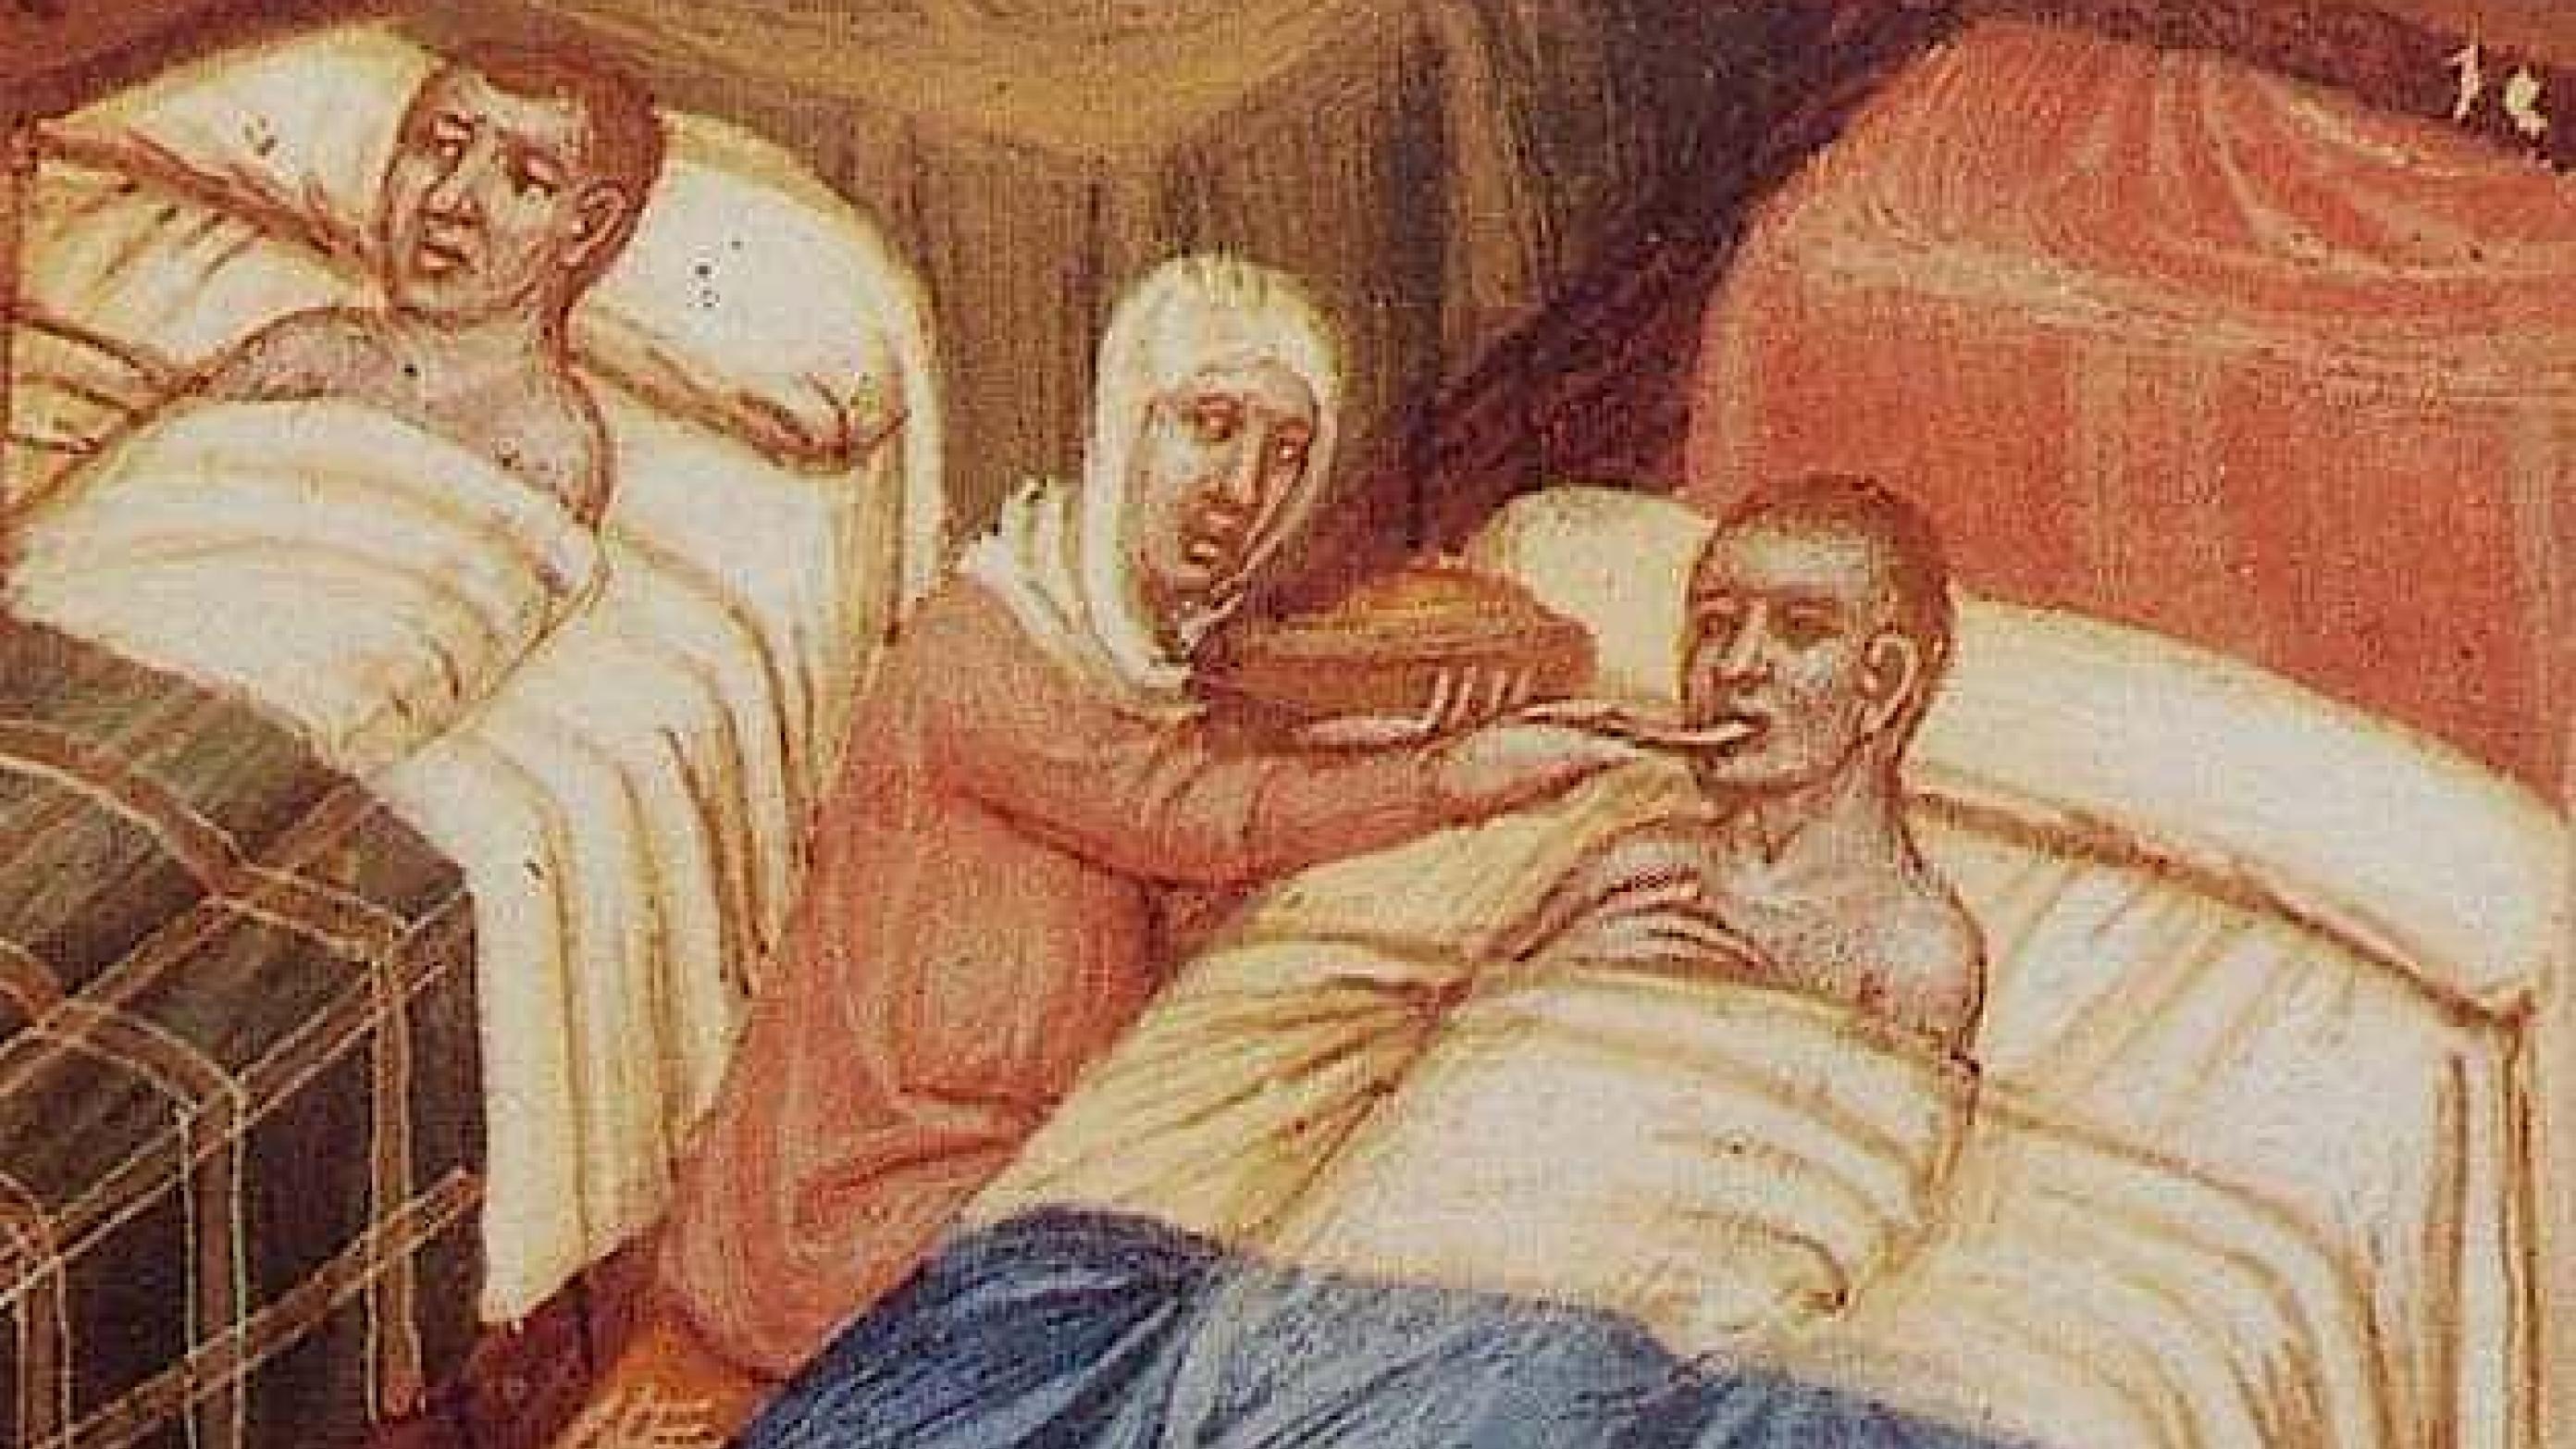 Middelalderens sundhedsvæsen har ikke det bedste ry. Men det er ikke altid helt retfærdigt. Illustration fra middelalderligt håndskrift. 